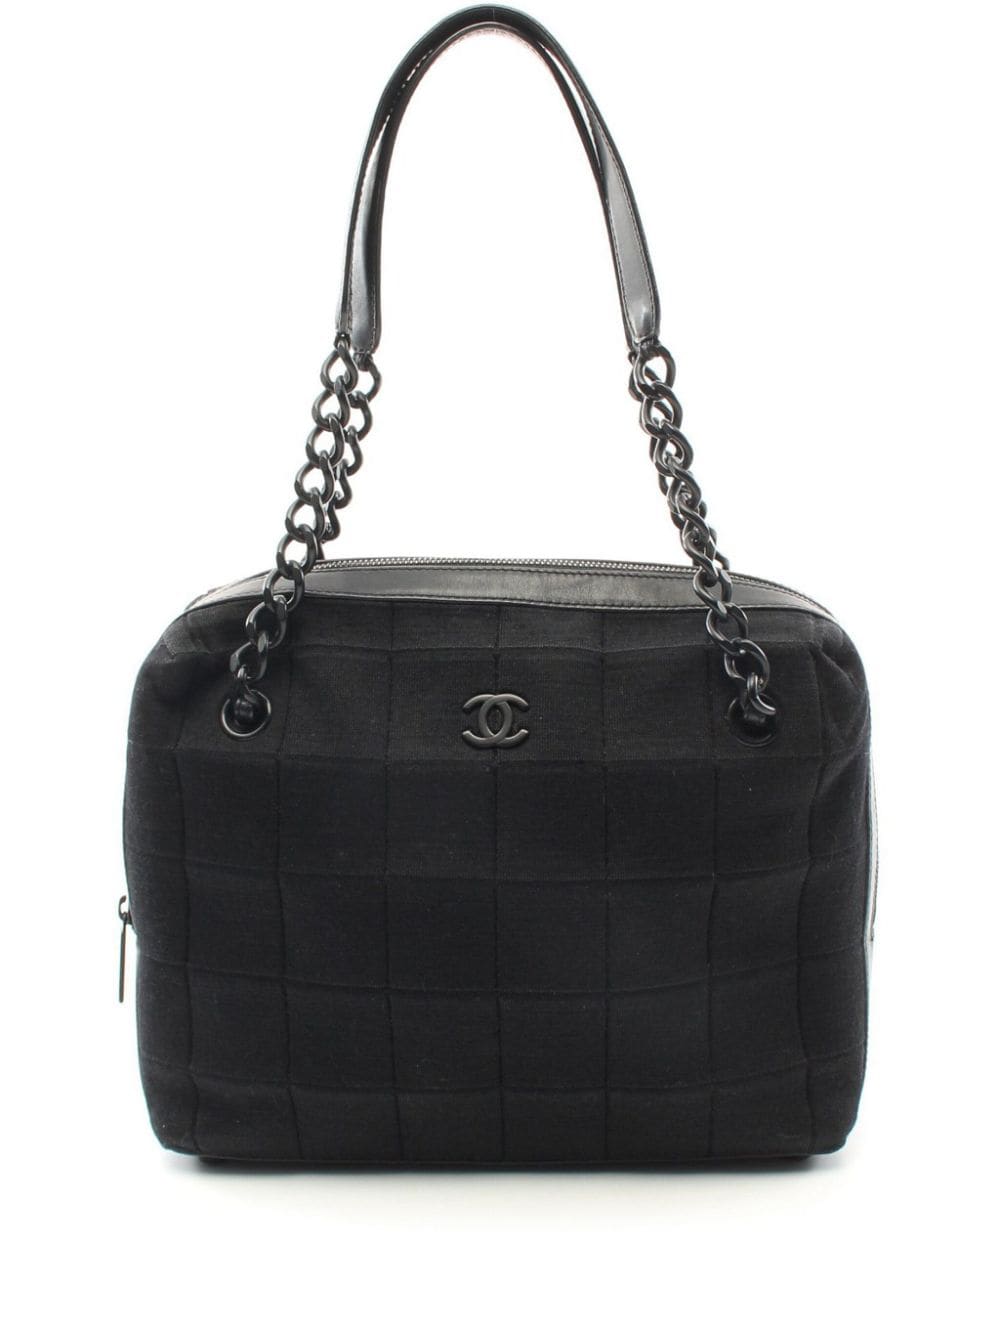 Pre-owned Chanel 2000-2002 Cc Choco Bar Handbag In Black